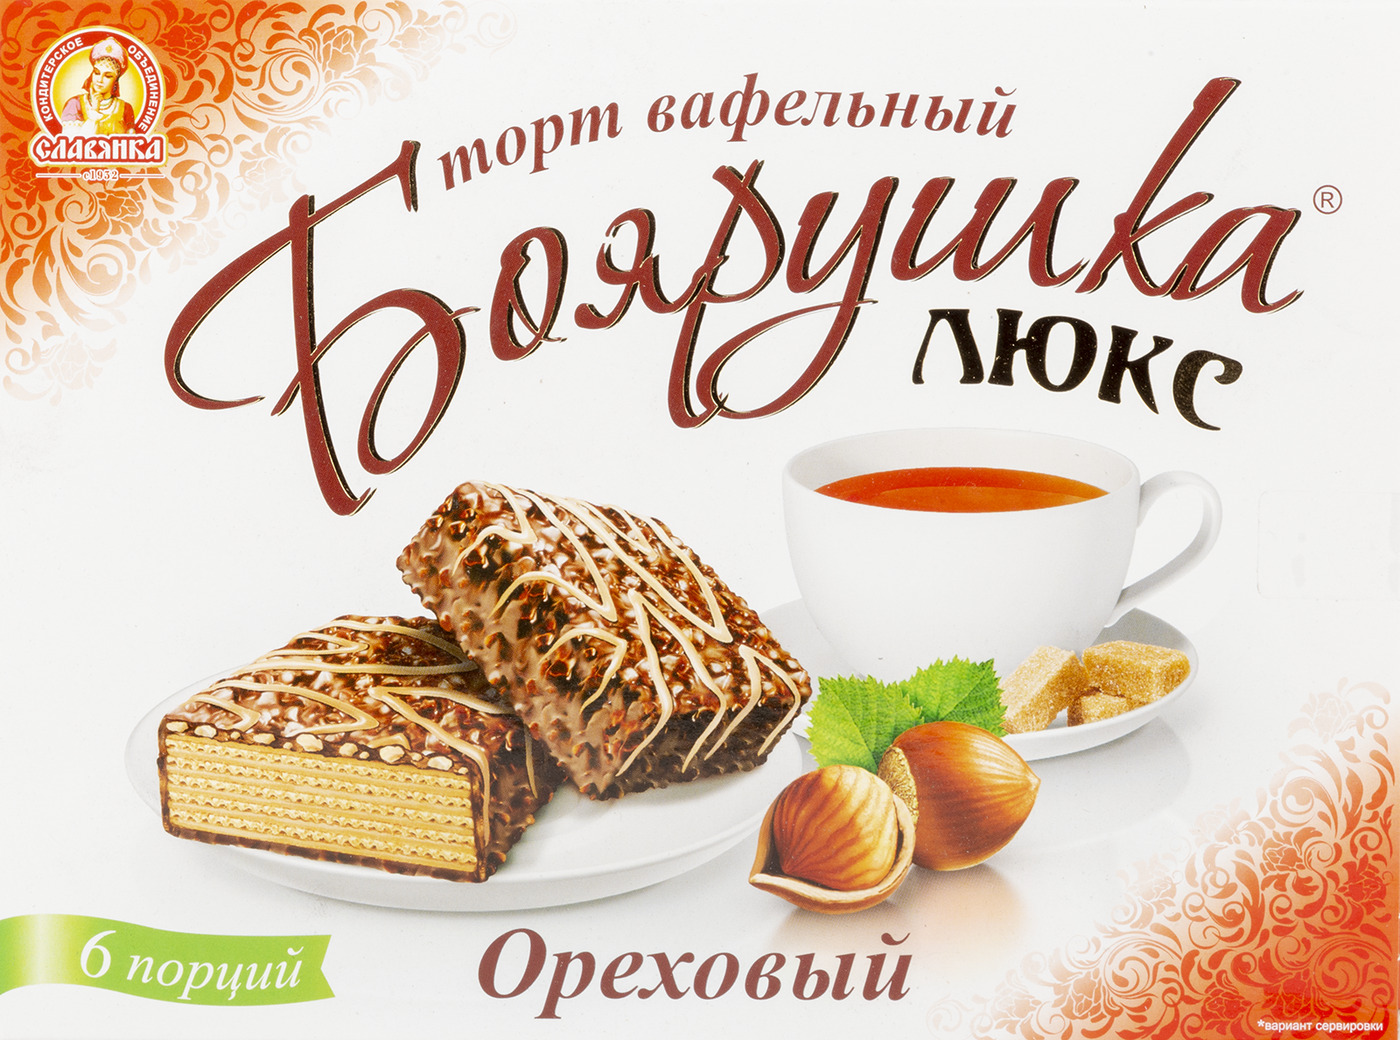 Торт вафельный глазированный "Боярушка" ореховый 230гр/КФ Славянка